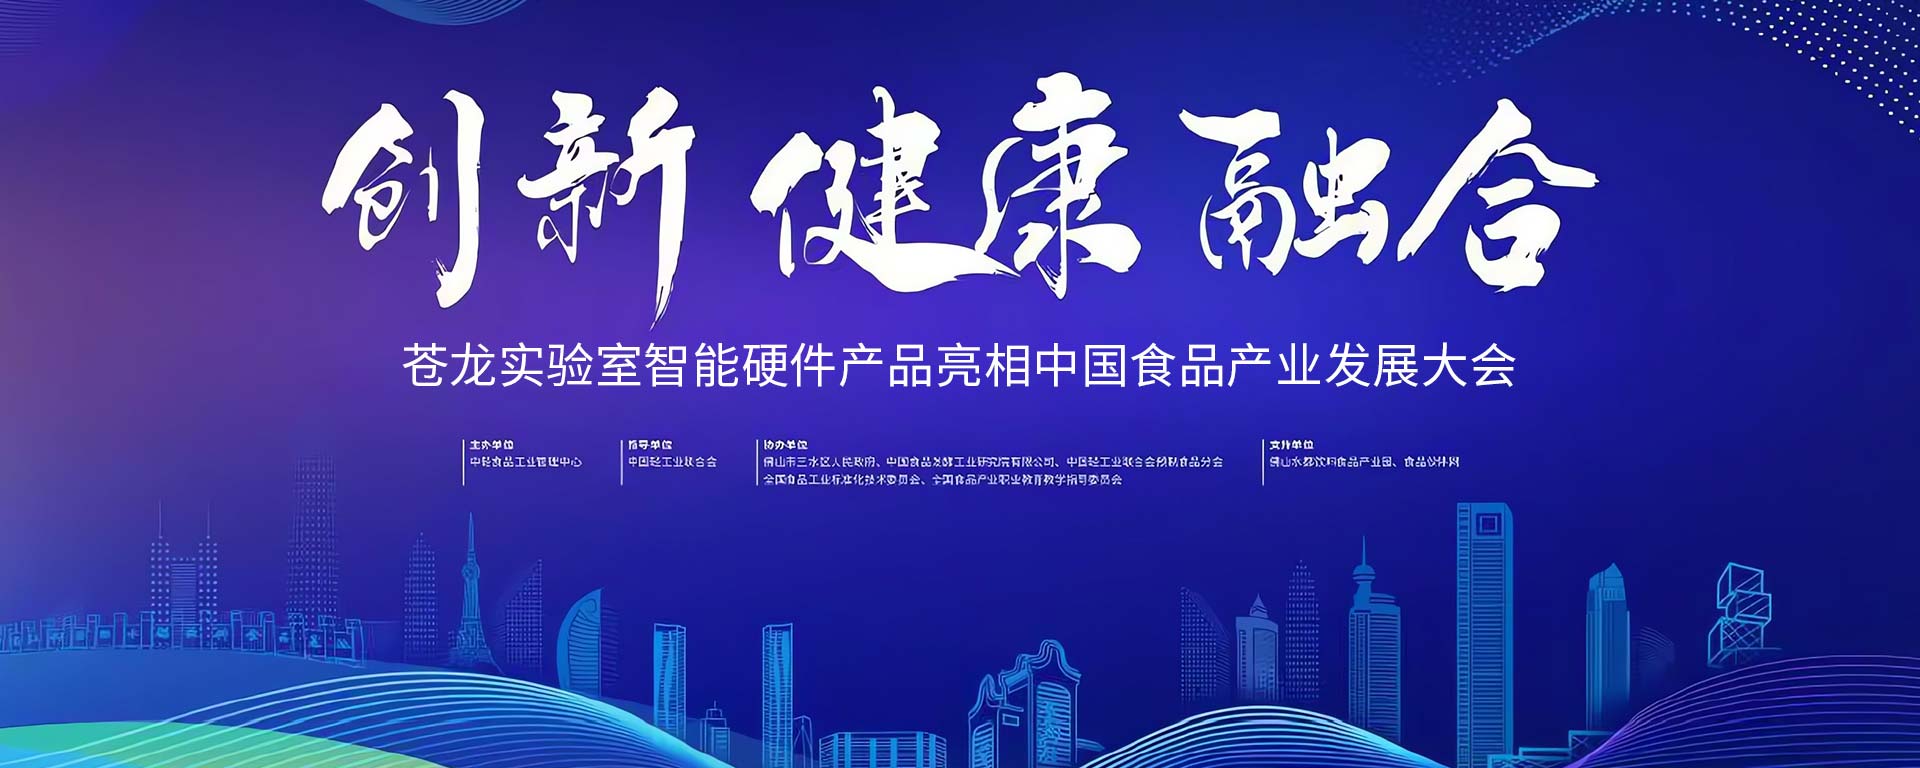 苍龙实验室智能硬件产品亮相中国食品产业发展大会